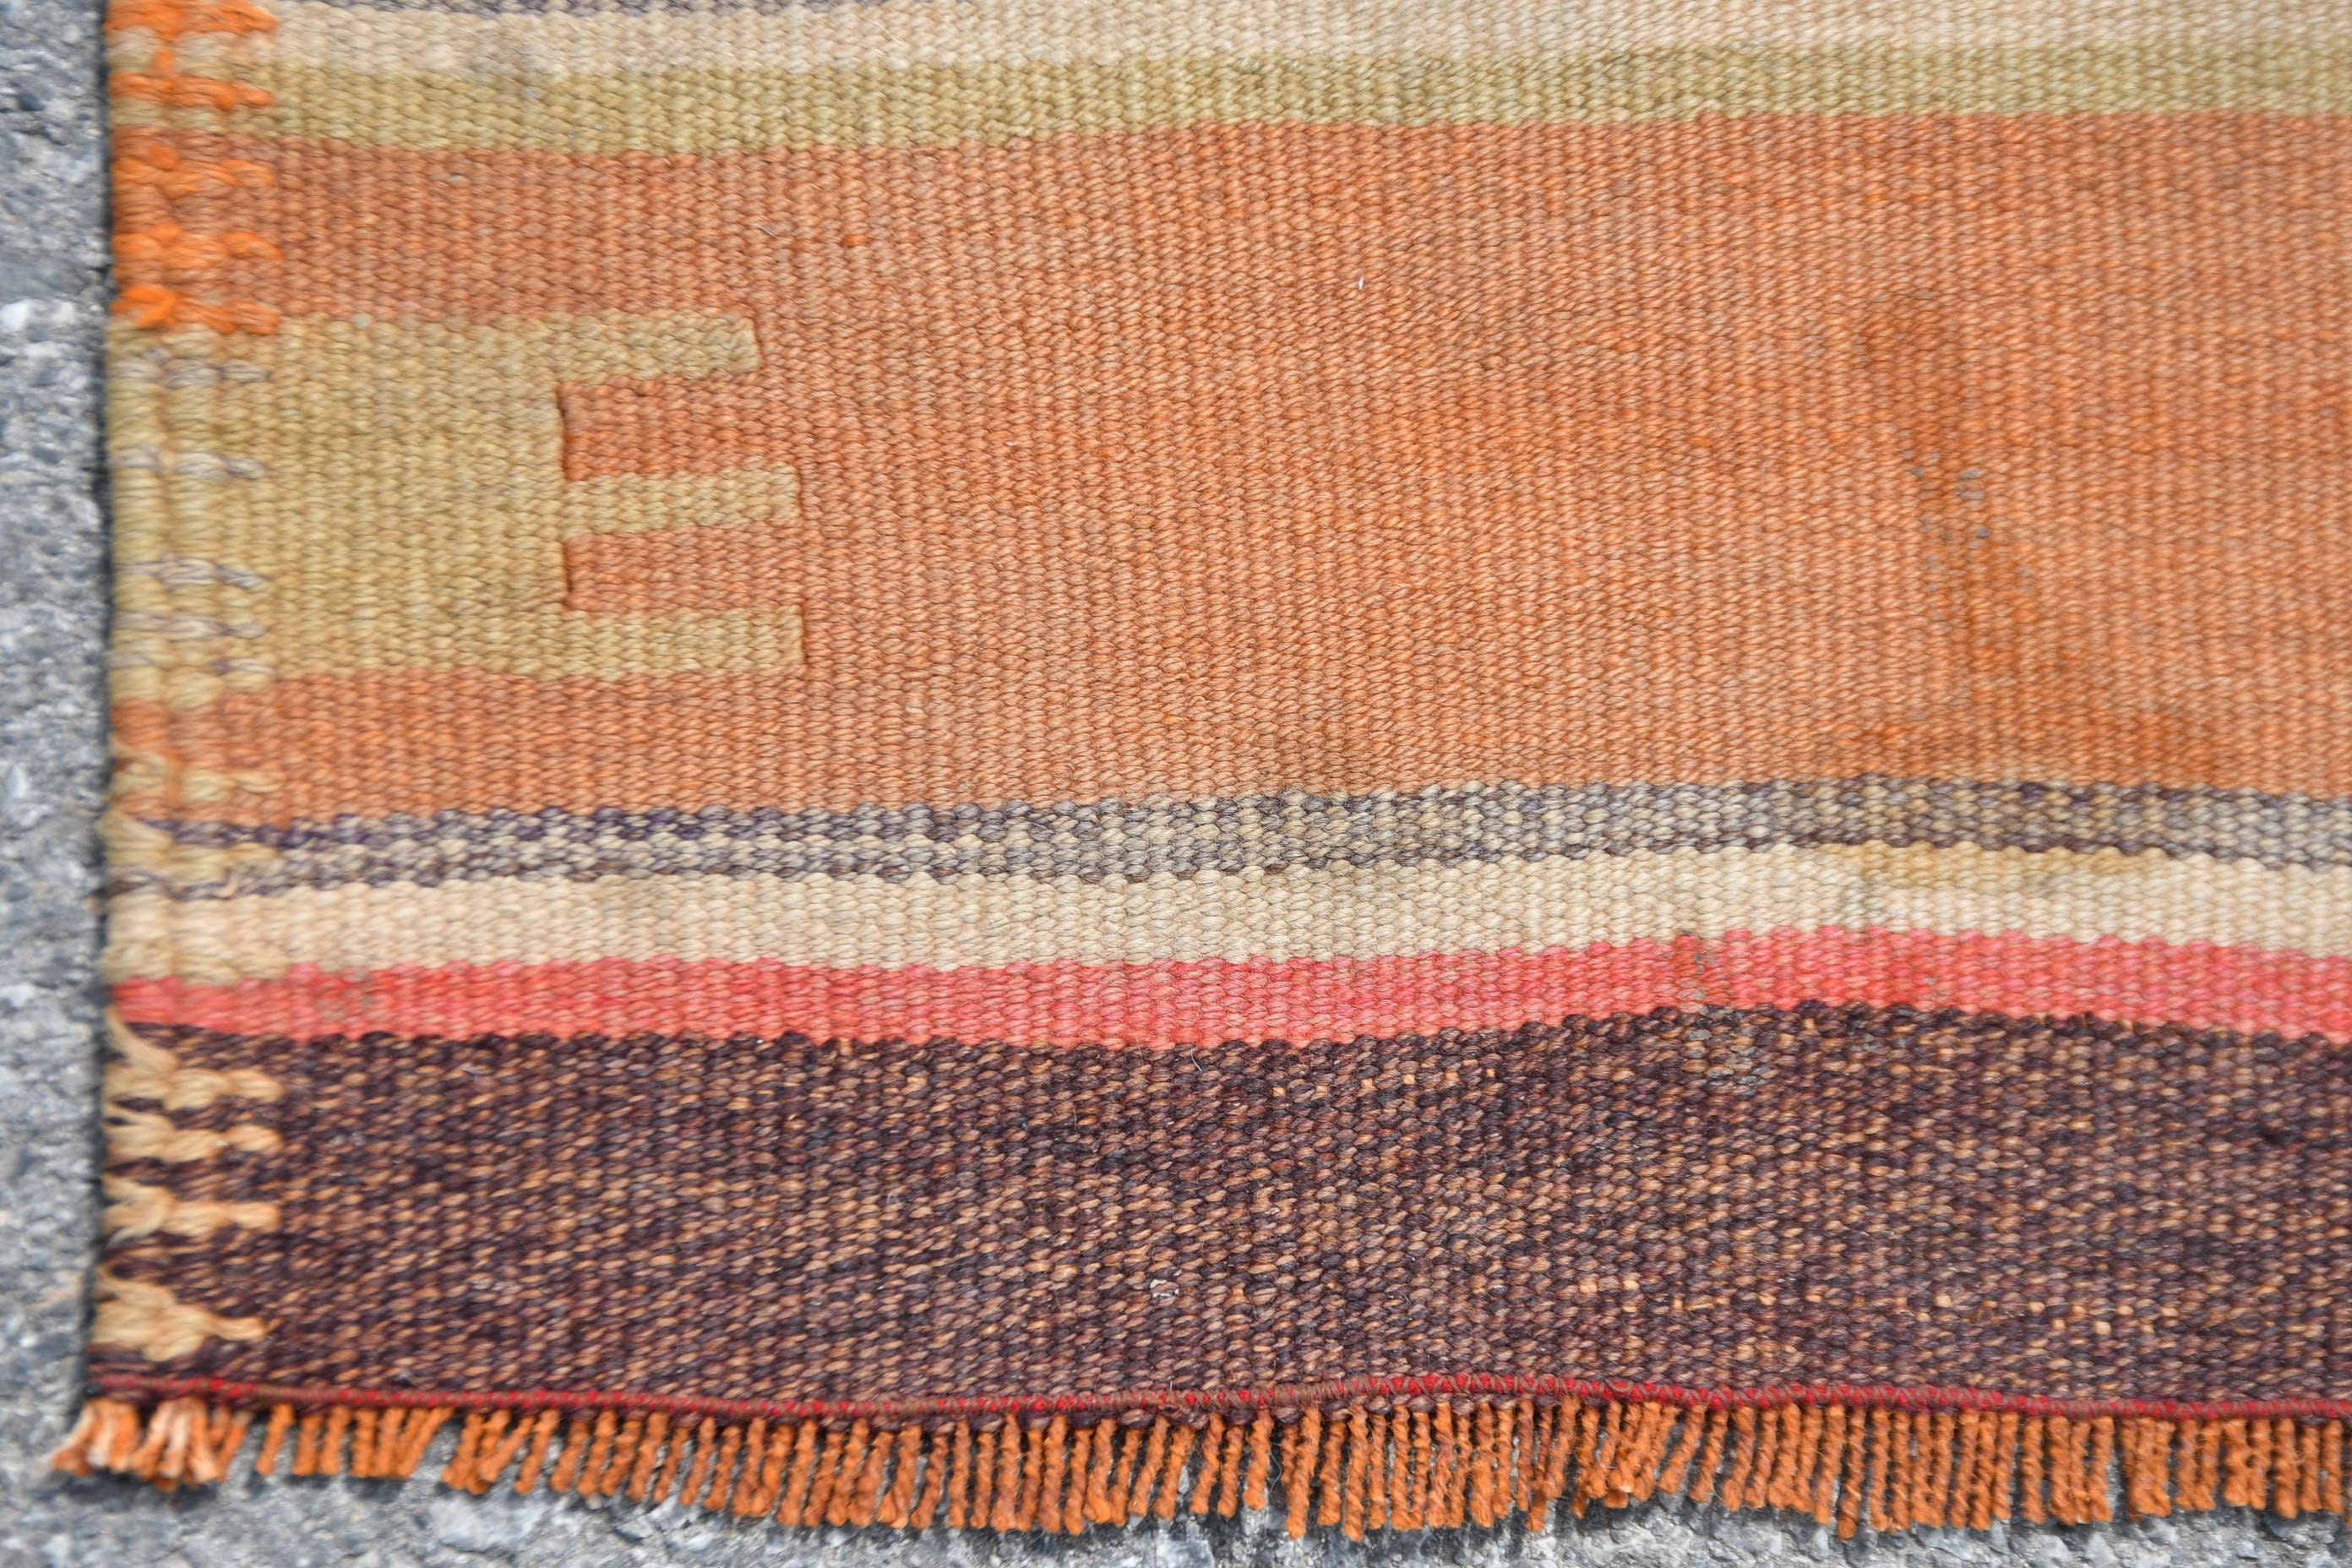 Vintage Rugs, Kitchen Rug, Stair Rug, Kilim, Rugs for Runner, Ethnic Rug, 2.6x9.9 ft Runner Rug, Oriental Rug, Bedroom Rug, Turkish Rug